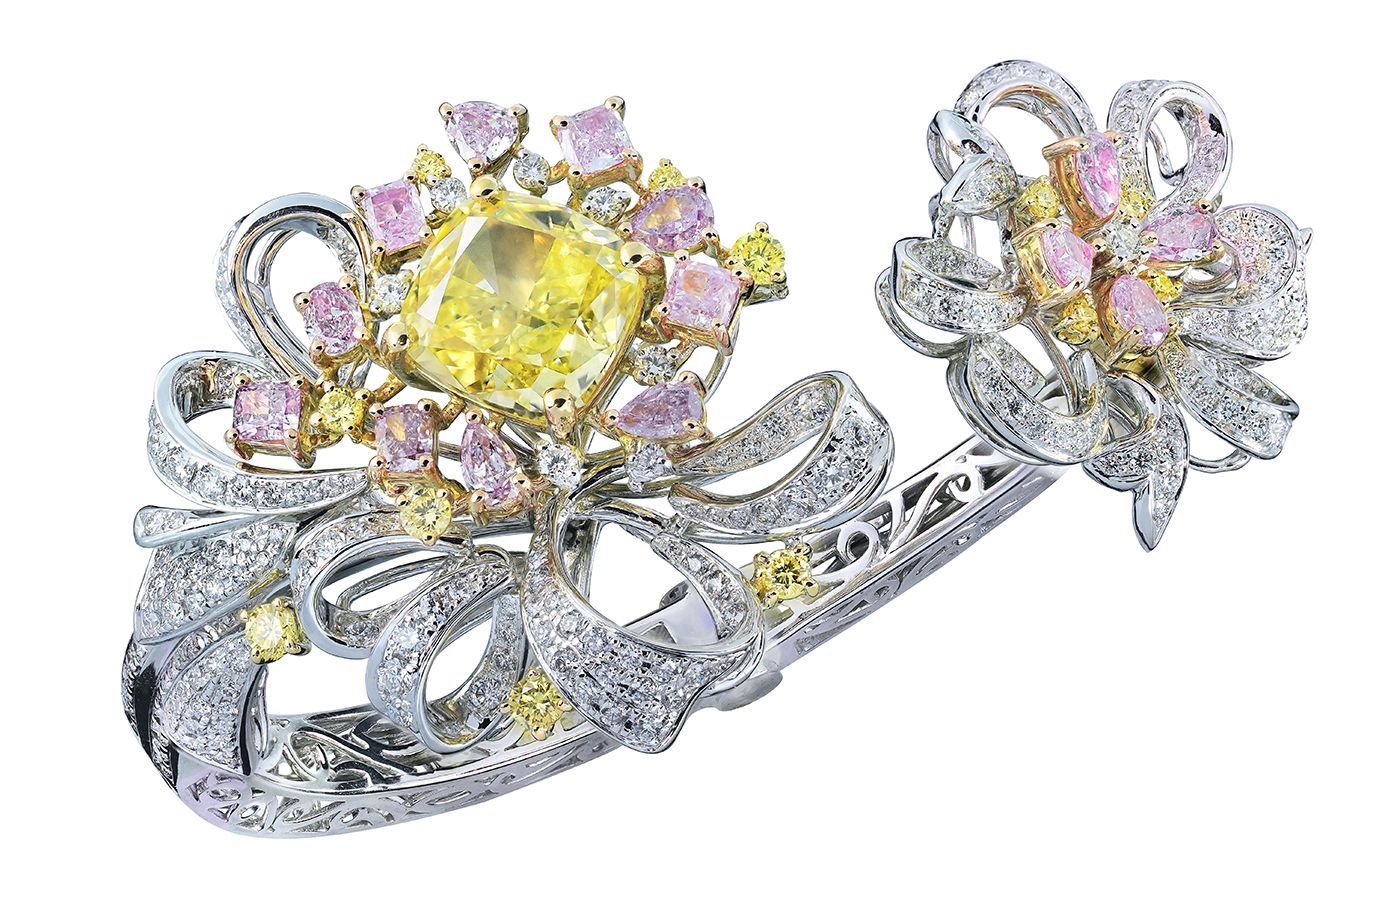 Caratell bracelet with a 5.02-carat fancy intense green-yellow diamond alongside fancy to fancy vivid pink diamonds